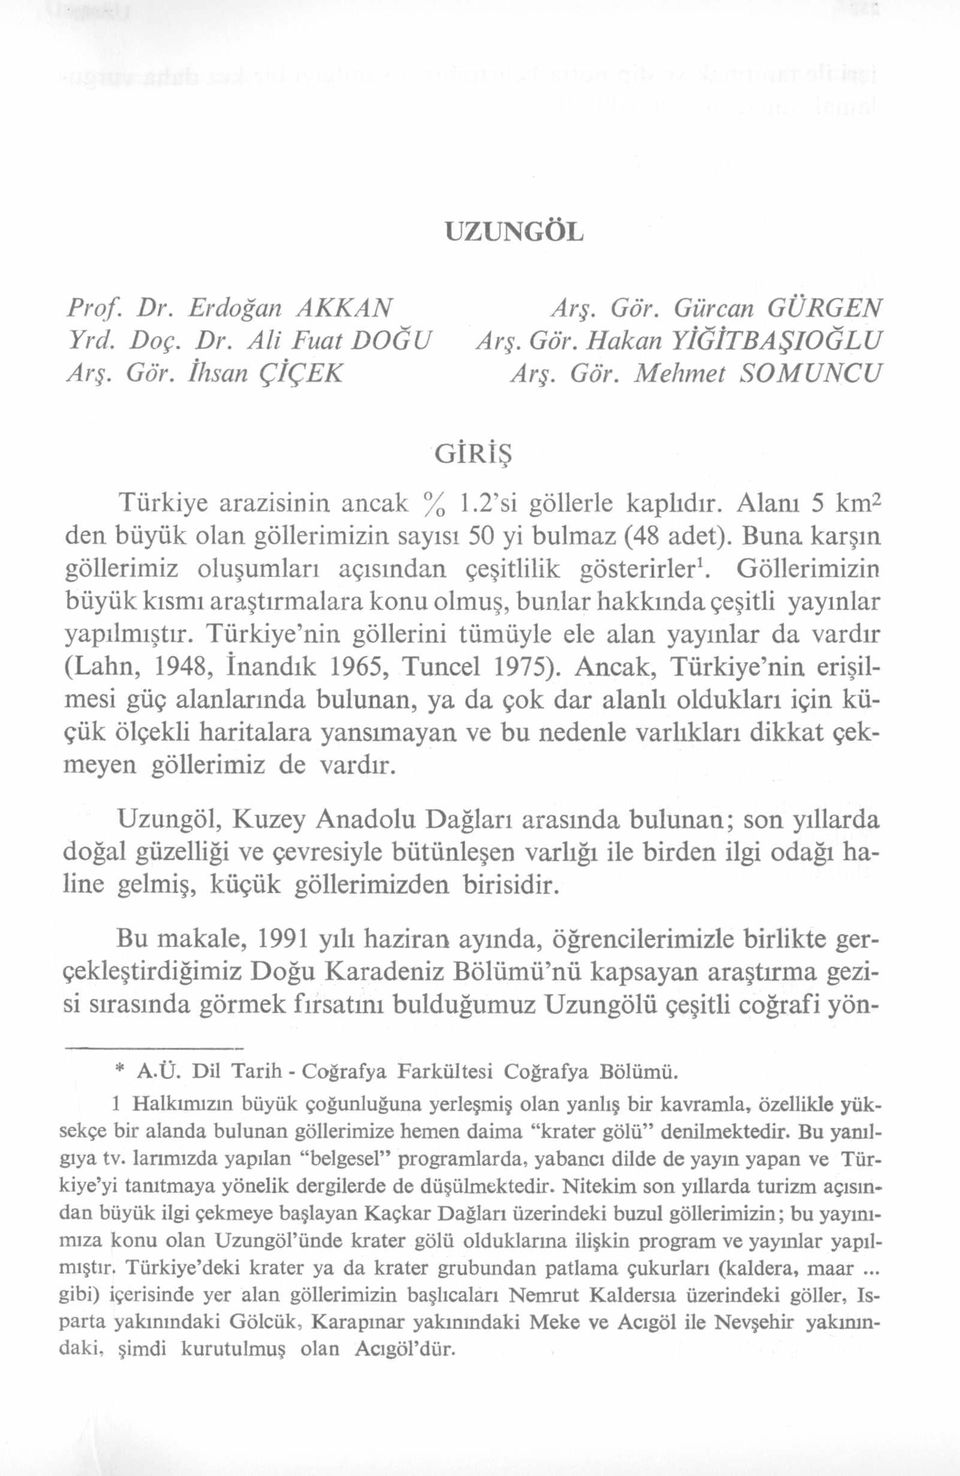 Göllerimizin büyük kısmı araştırm alara konu olmuş, bunlar hakkında çeşitli yayınlar yapılmıştır. Türkiye nin göllerini tümüyle ele alan yayınlar da vardır (Lahn, 1948, İnandık 1965, Tuncel 1975).